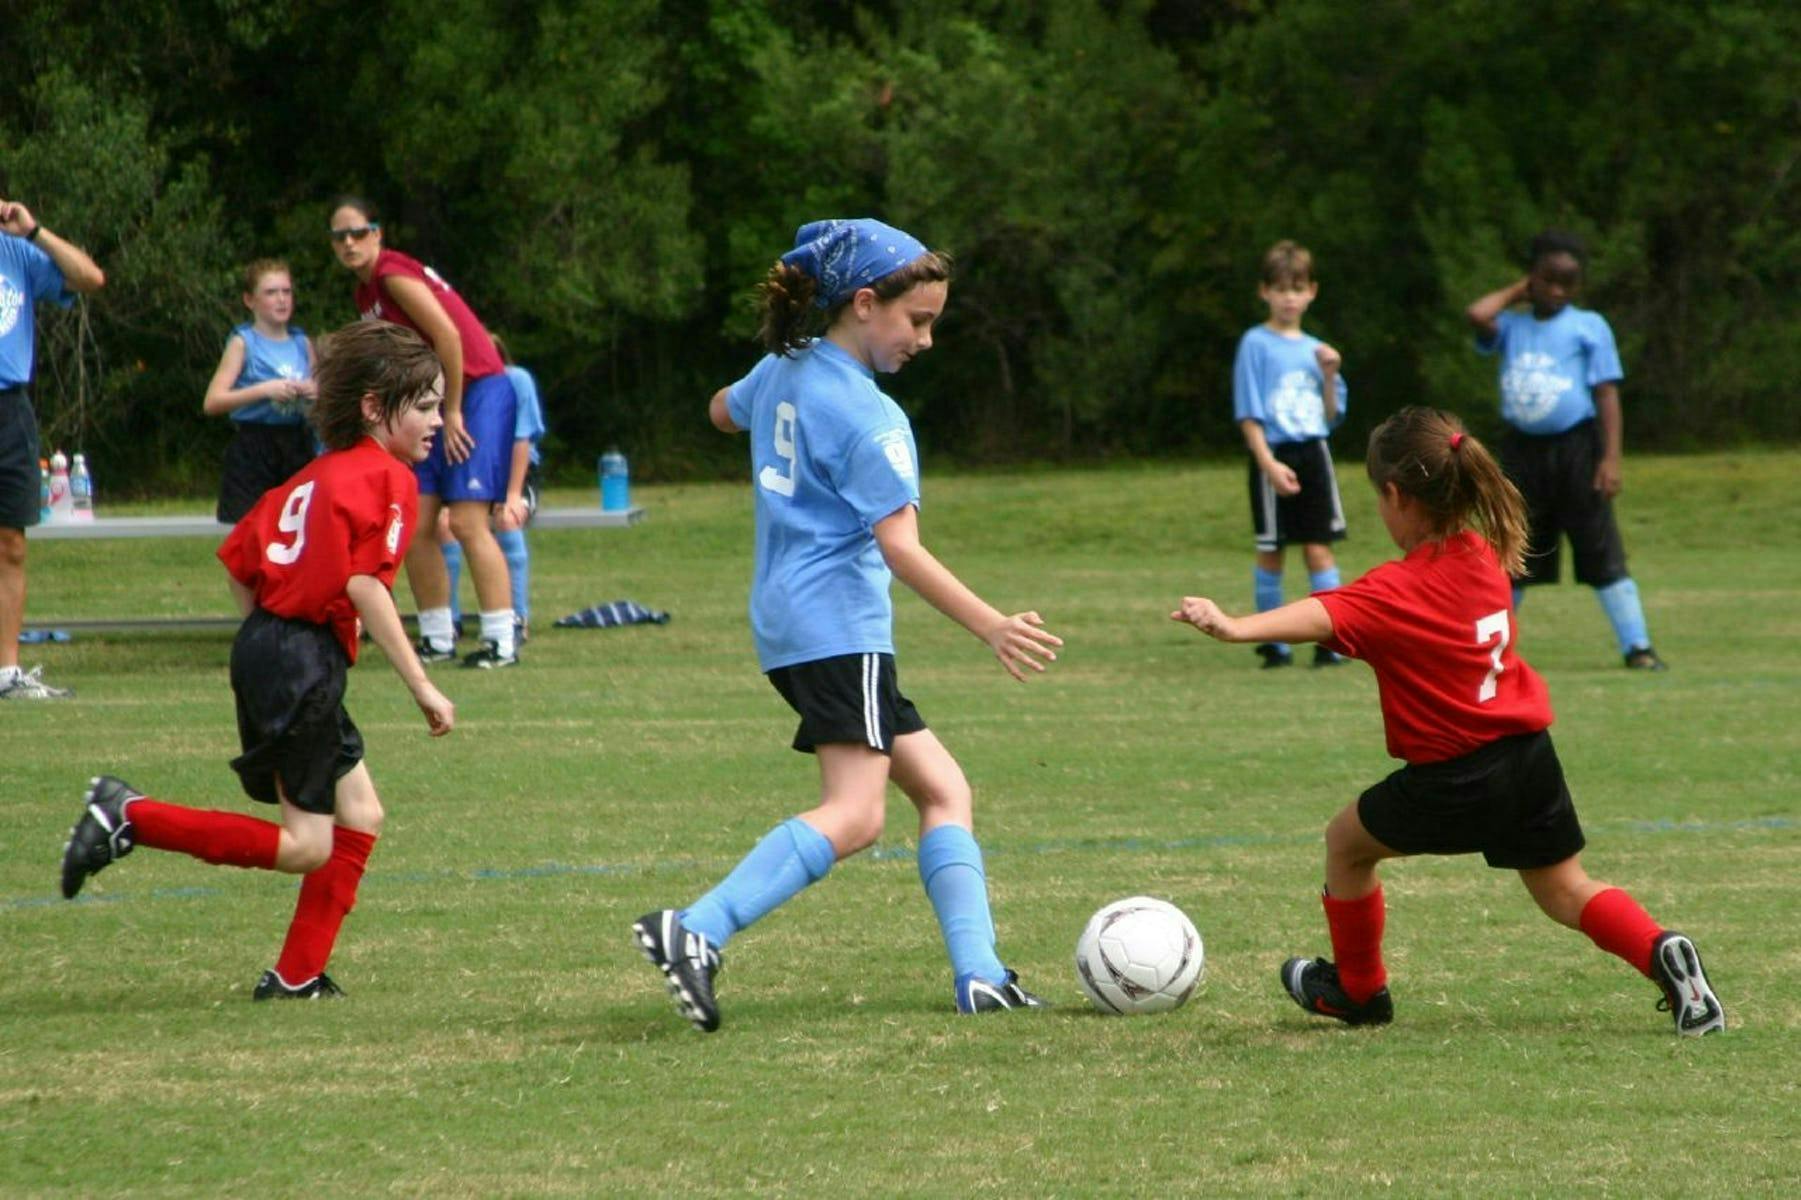 Sports Injuries in Children